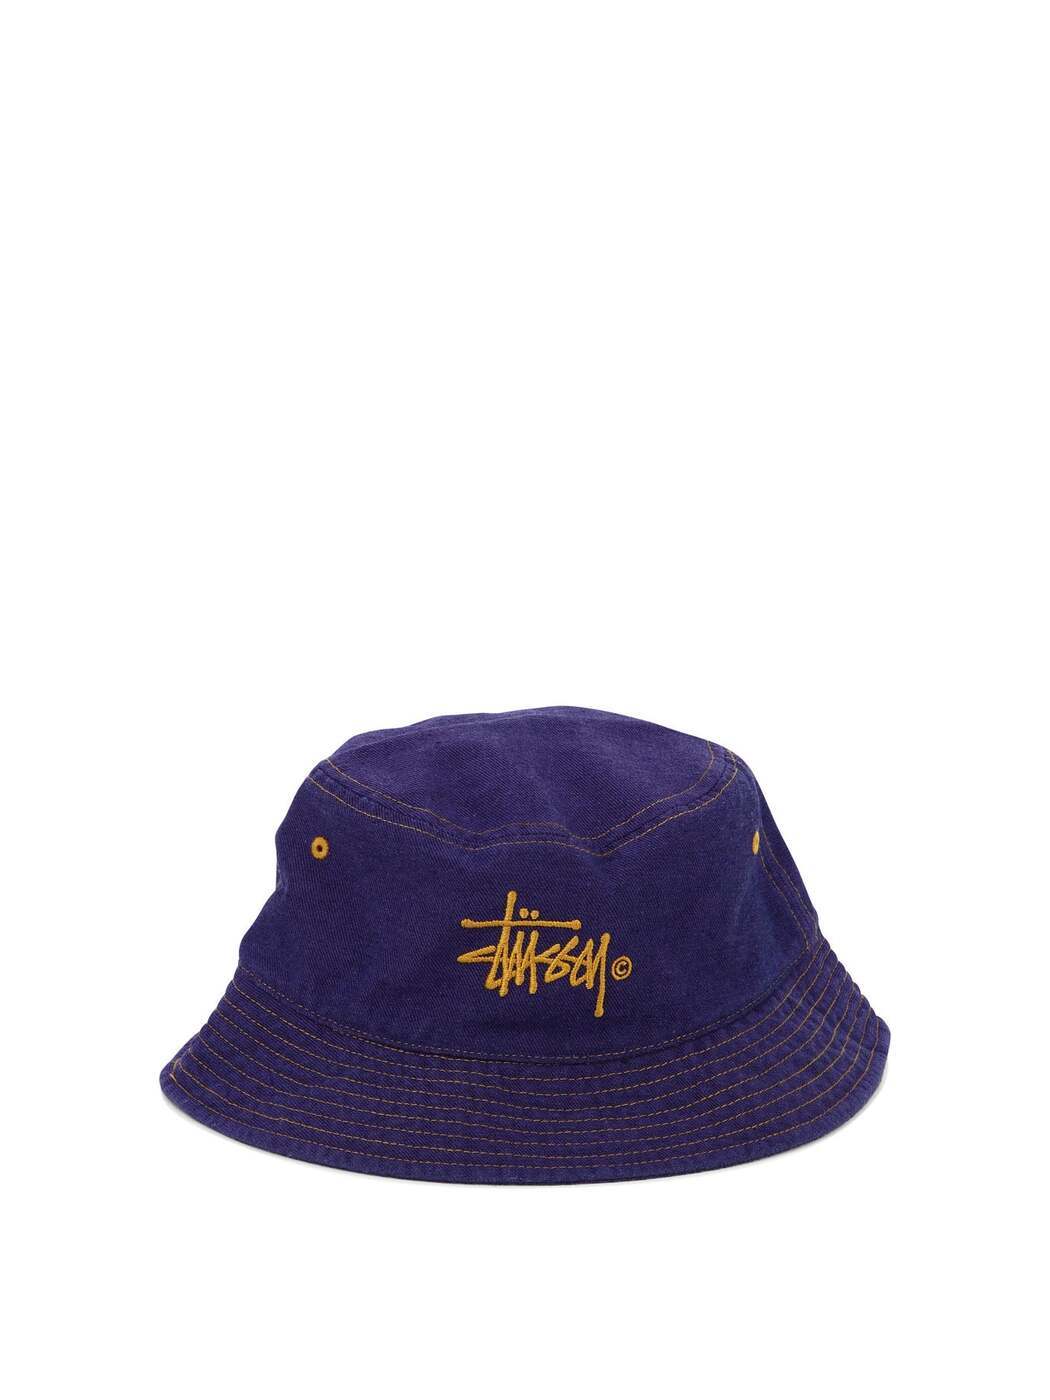 ステューシー STUSSY ステューシー パープル Purple 帽子 メンズ 8251240480917 【関税・送料無料】【ラッピング無料】 ba